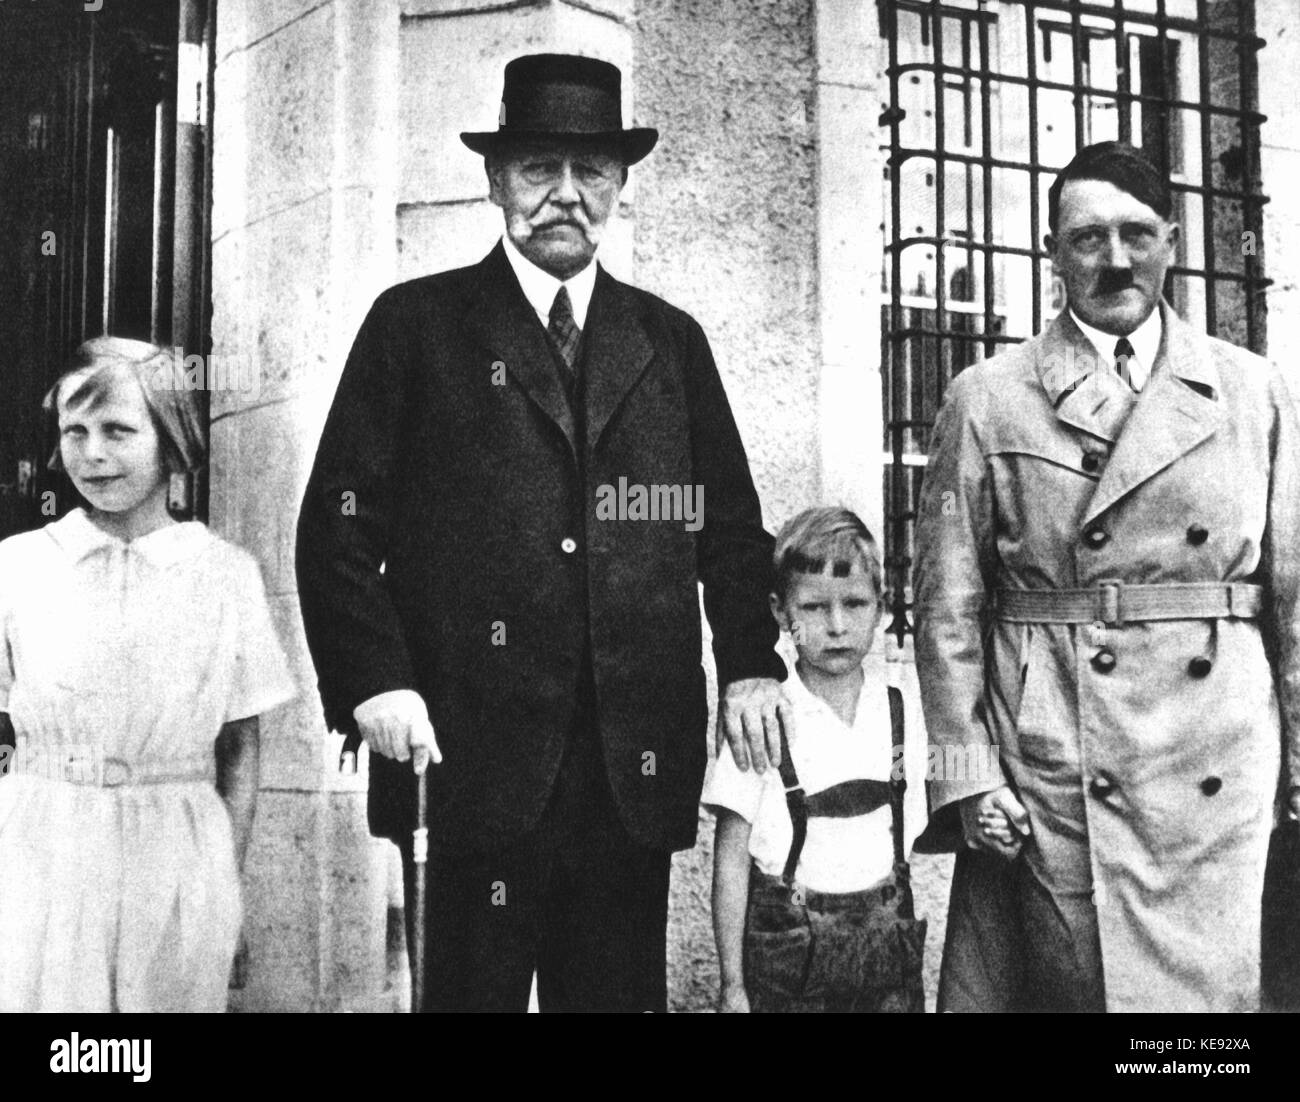 Chancelier Adolf Hitler (r) visites imperial le président Paul von Hindenburg (l) à l'estate neudeck en Prusse orientale en 1933/1934. Dans le monde d'utilisation | Banque D'Images